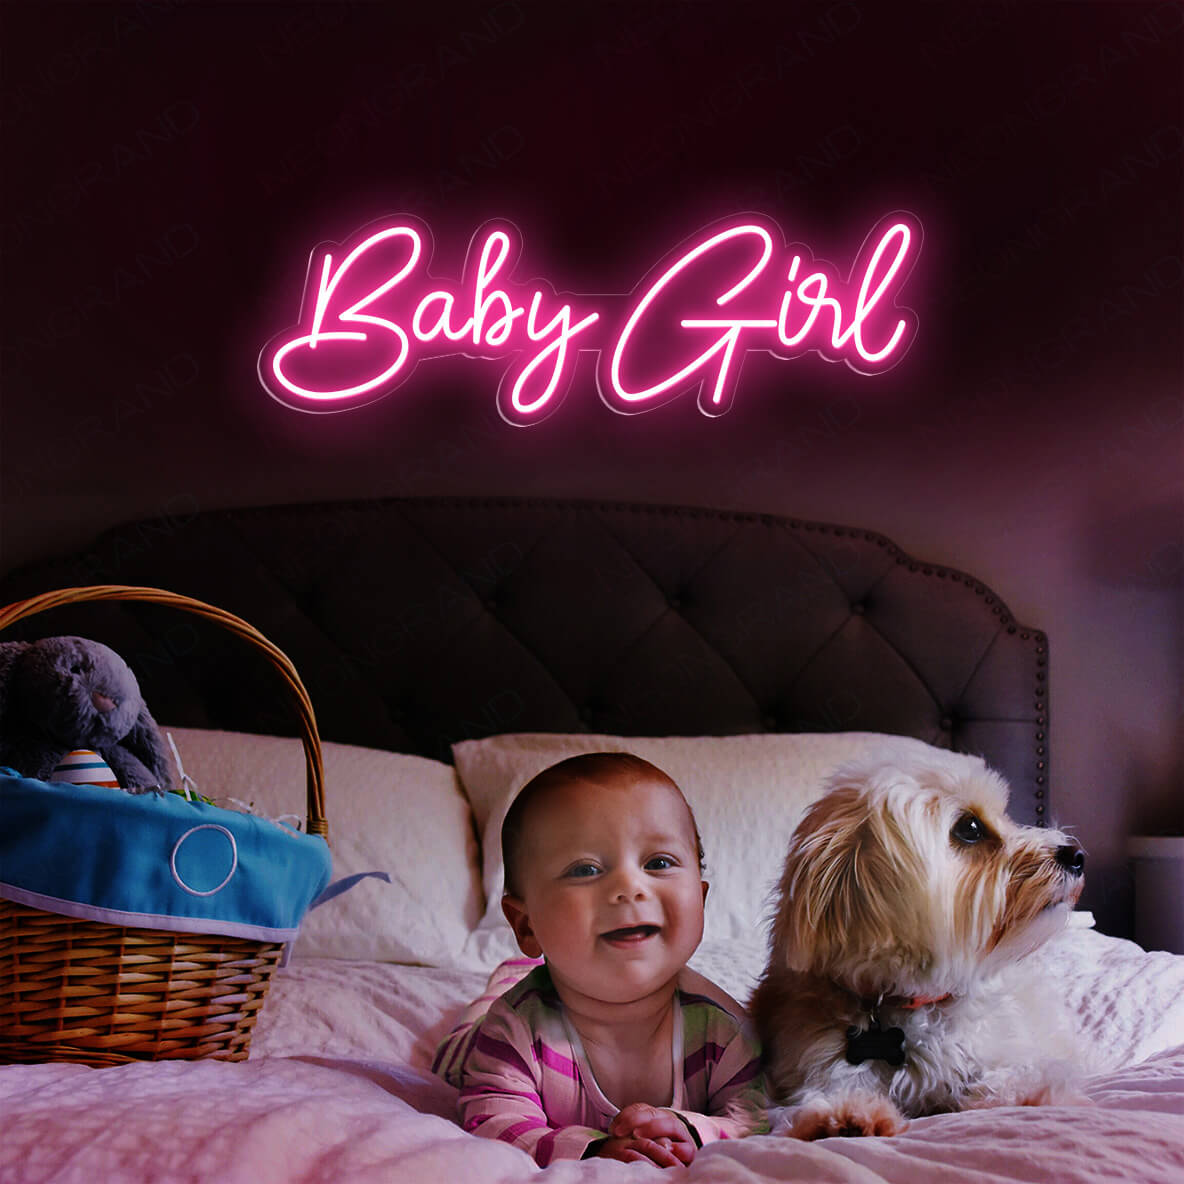 Baby Girl Neon Sign Led Light 3